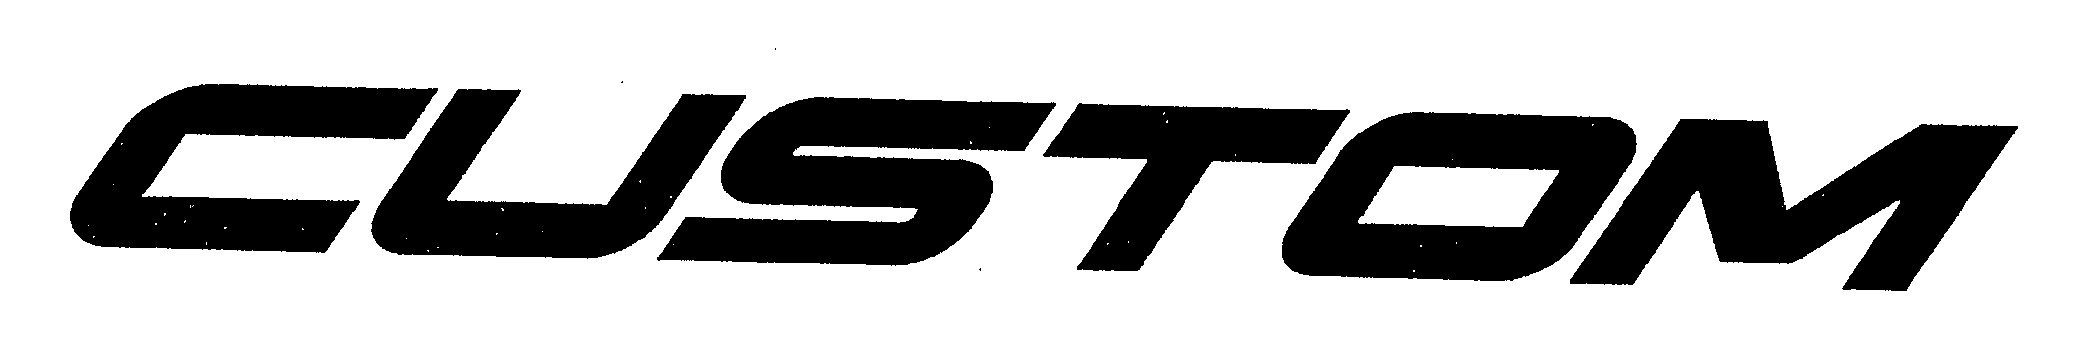 Trademark Logo CUSTOM